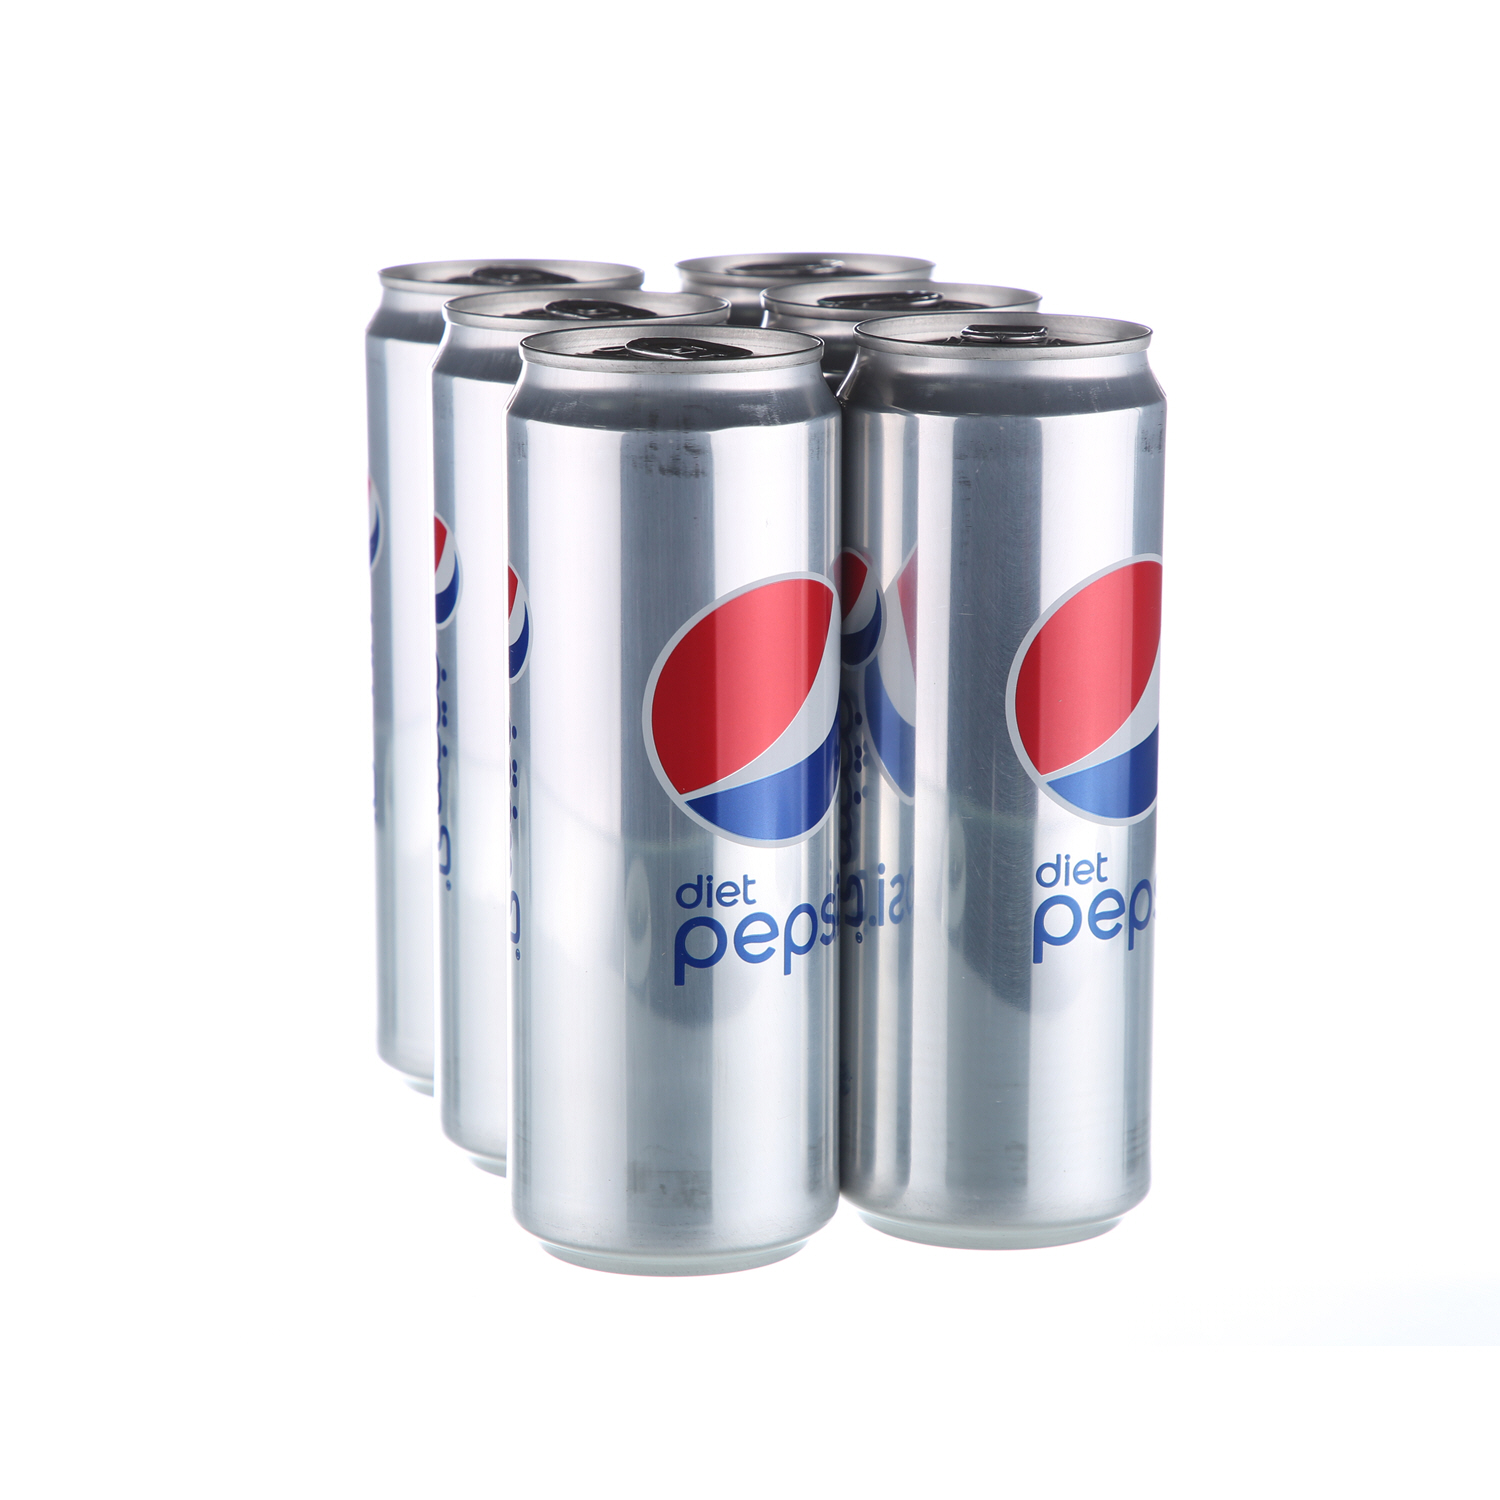 Pepsi Diet Pepsi Can 355ml × 6'S